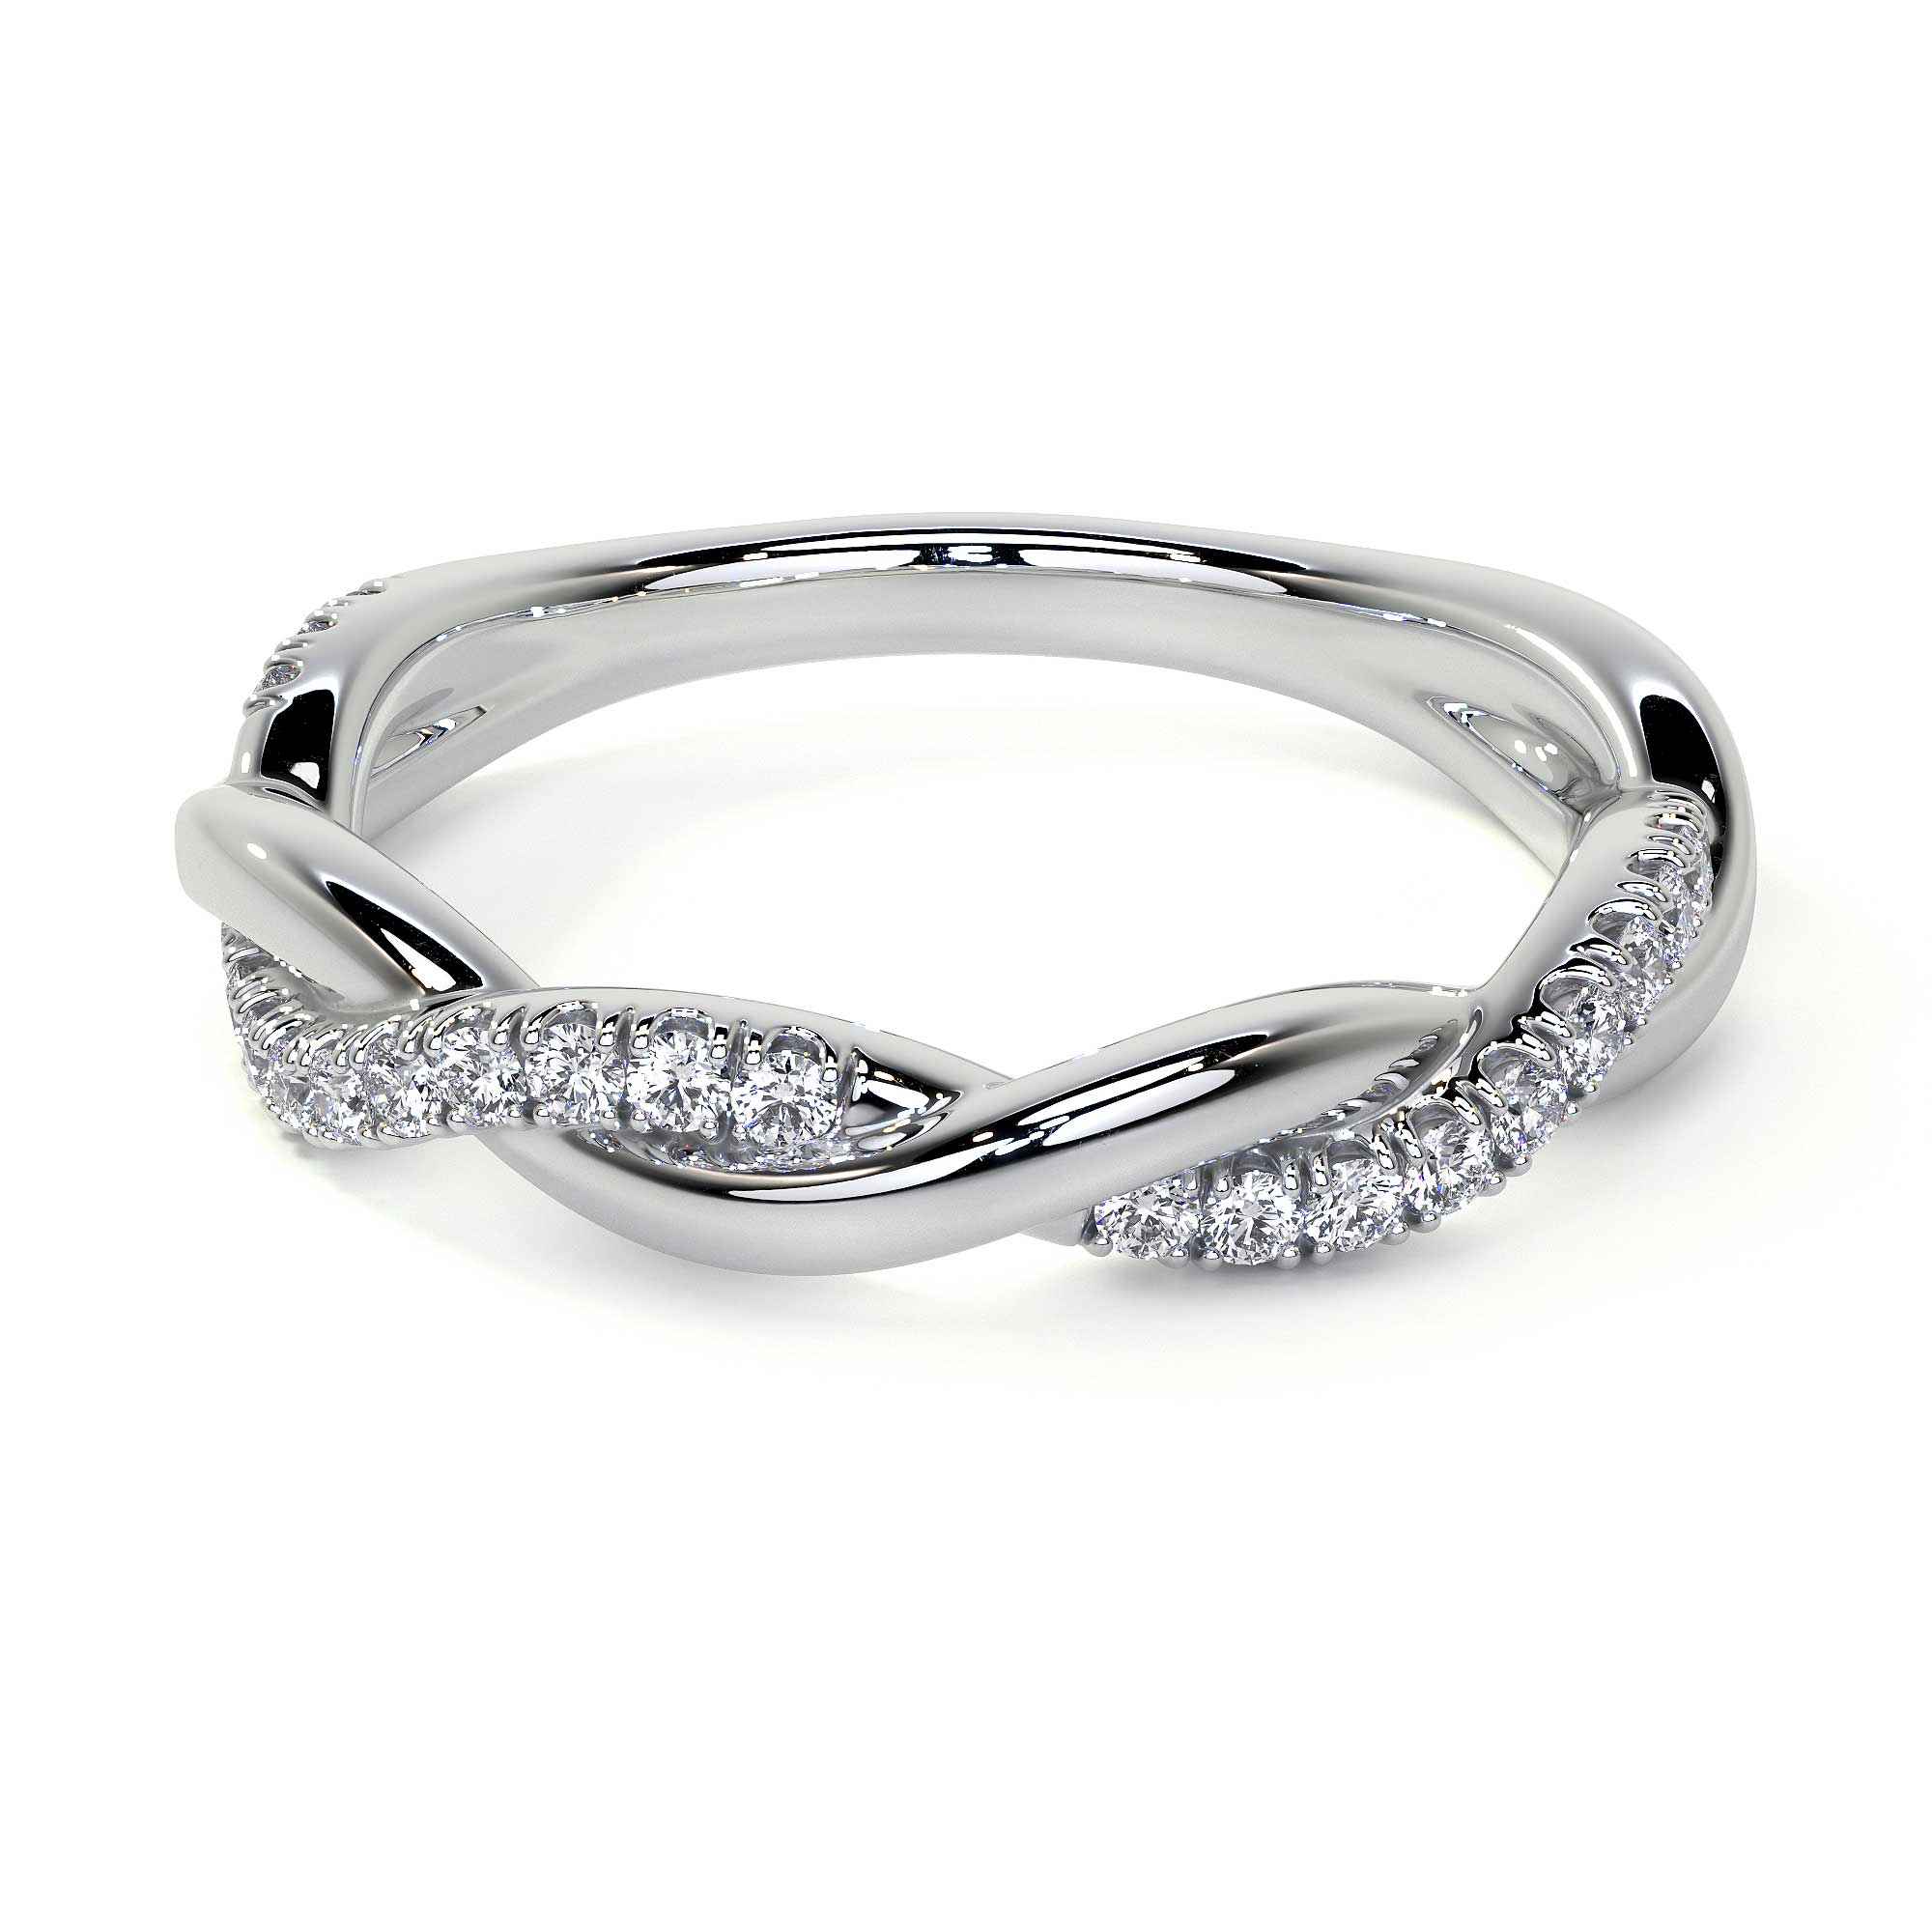 Twirl Ring with Diamond Pave - Rings - Leviev Diamonds